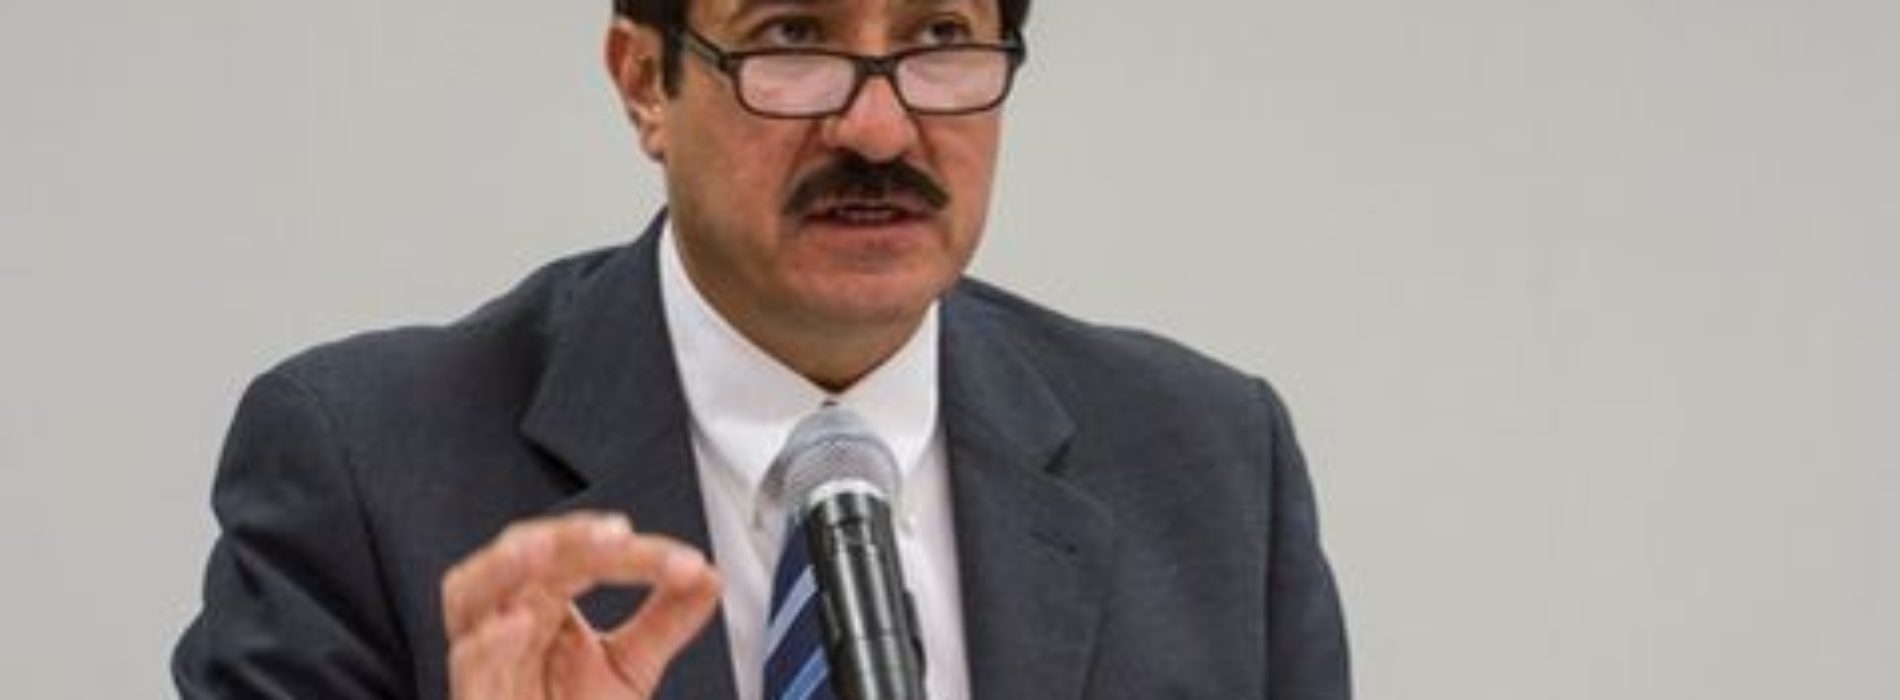 Corral será el candidato del PAN al gobierno de Chihuahua